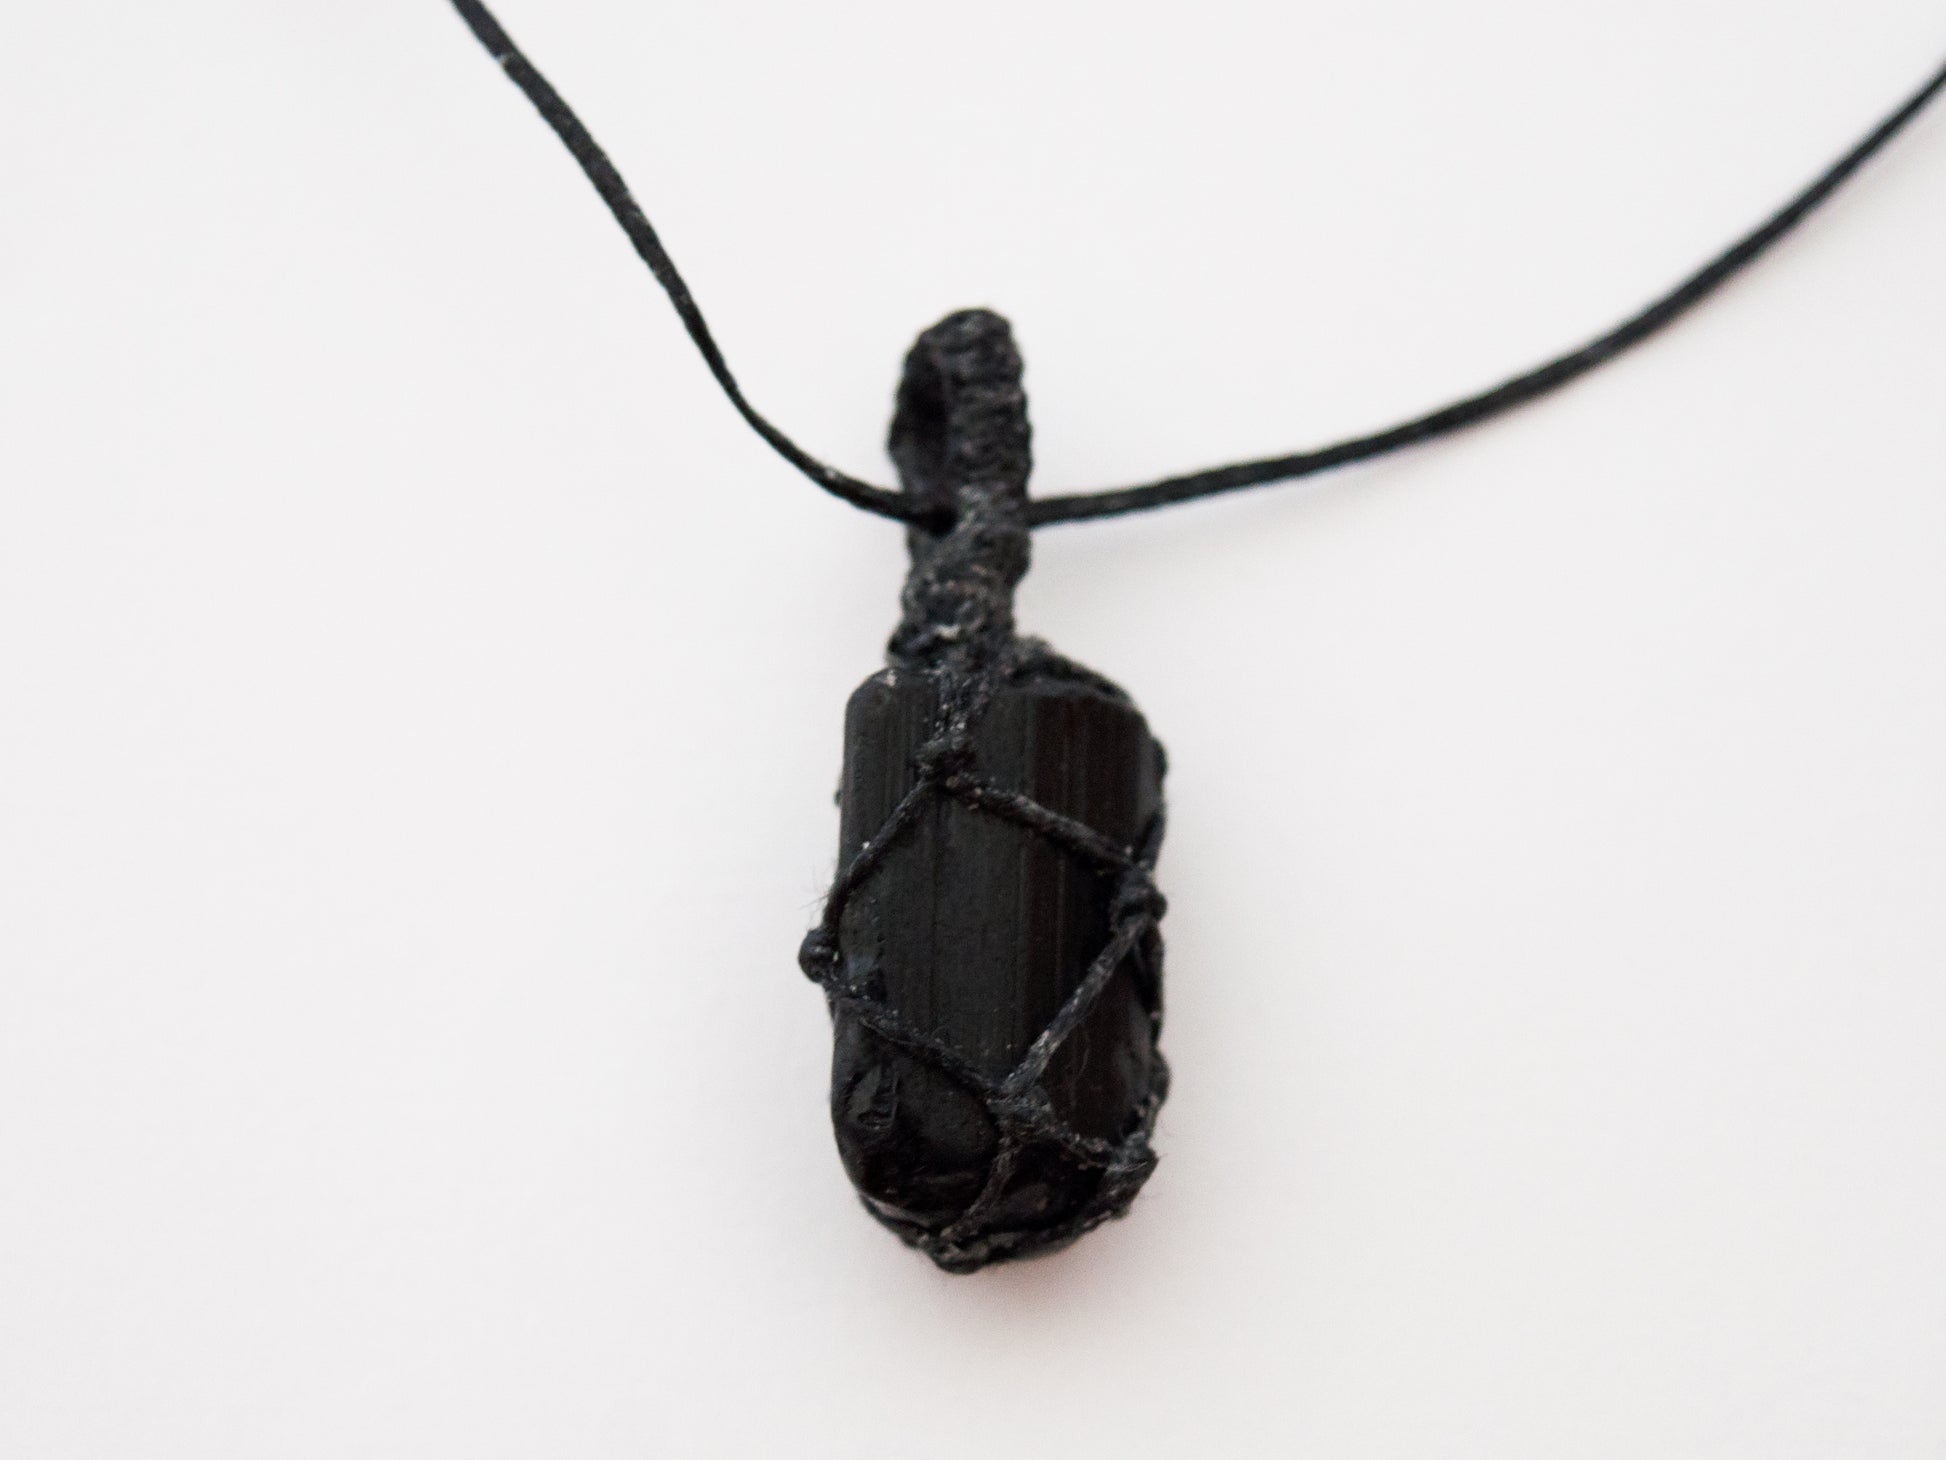 MeldedMind 15in Black Tourmaline Crystal with Adjustable Black Rope Necklace  151 - Melded Mind Metaphysical